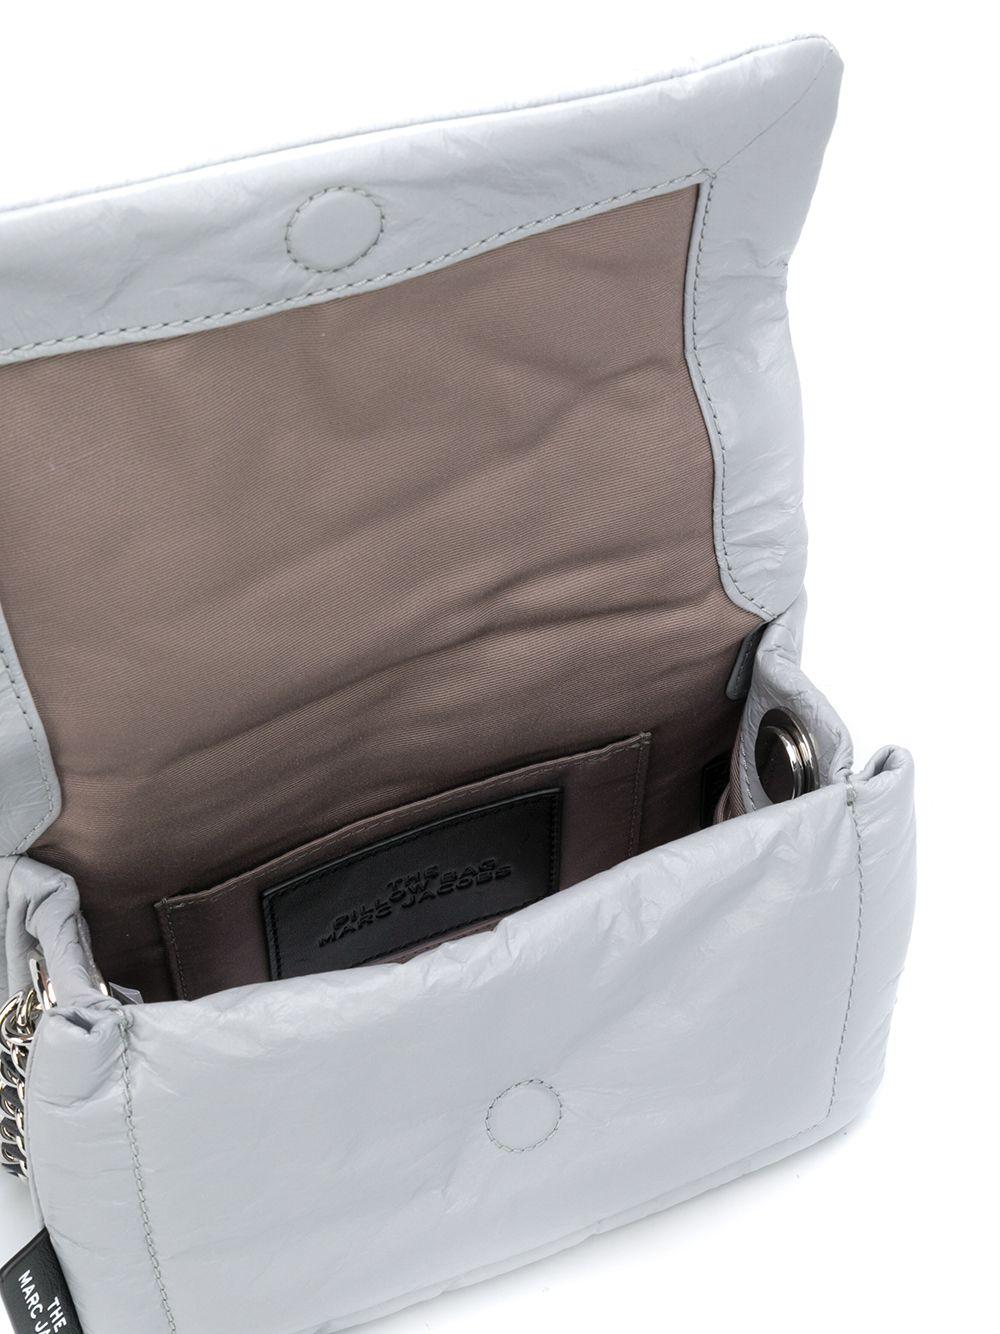 Marc Jacobs Pillow Bag - Grey Shoulder Bags, Handbags - MAR173509